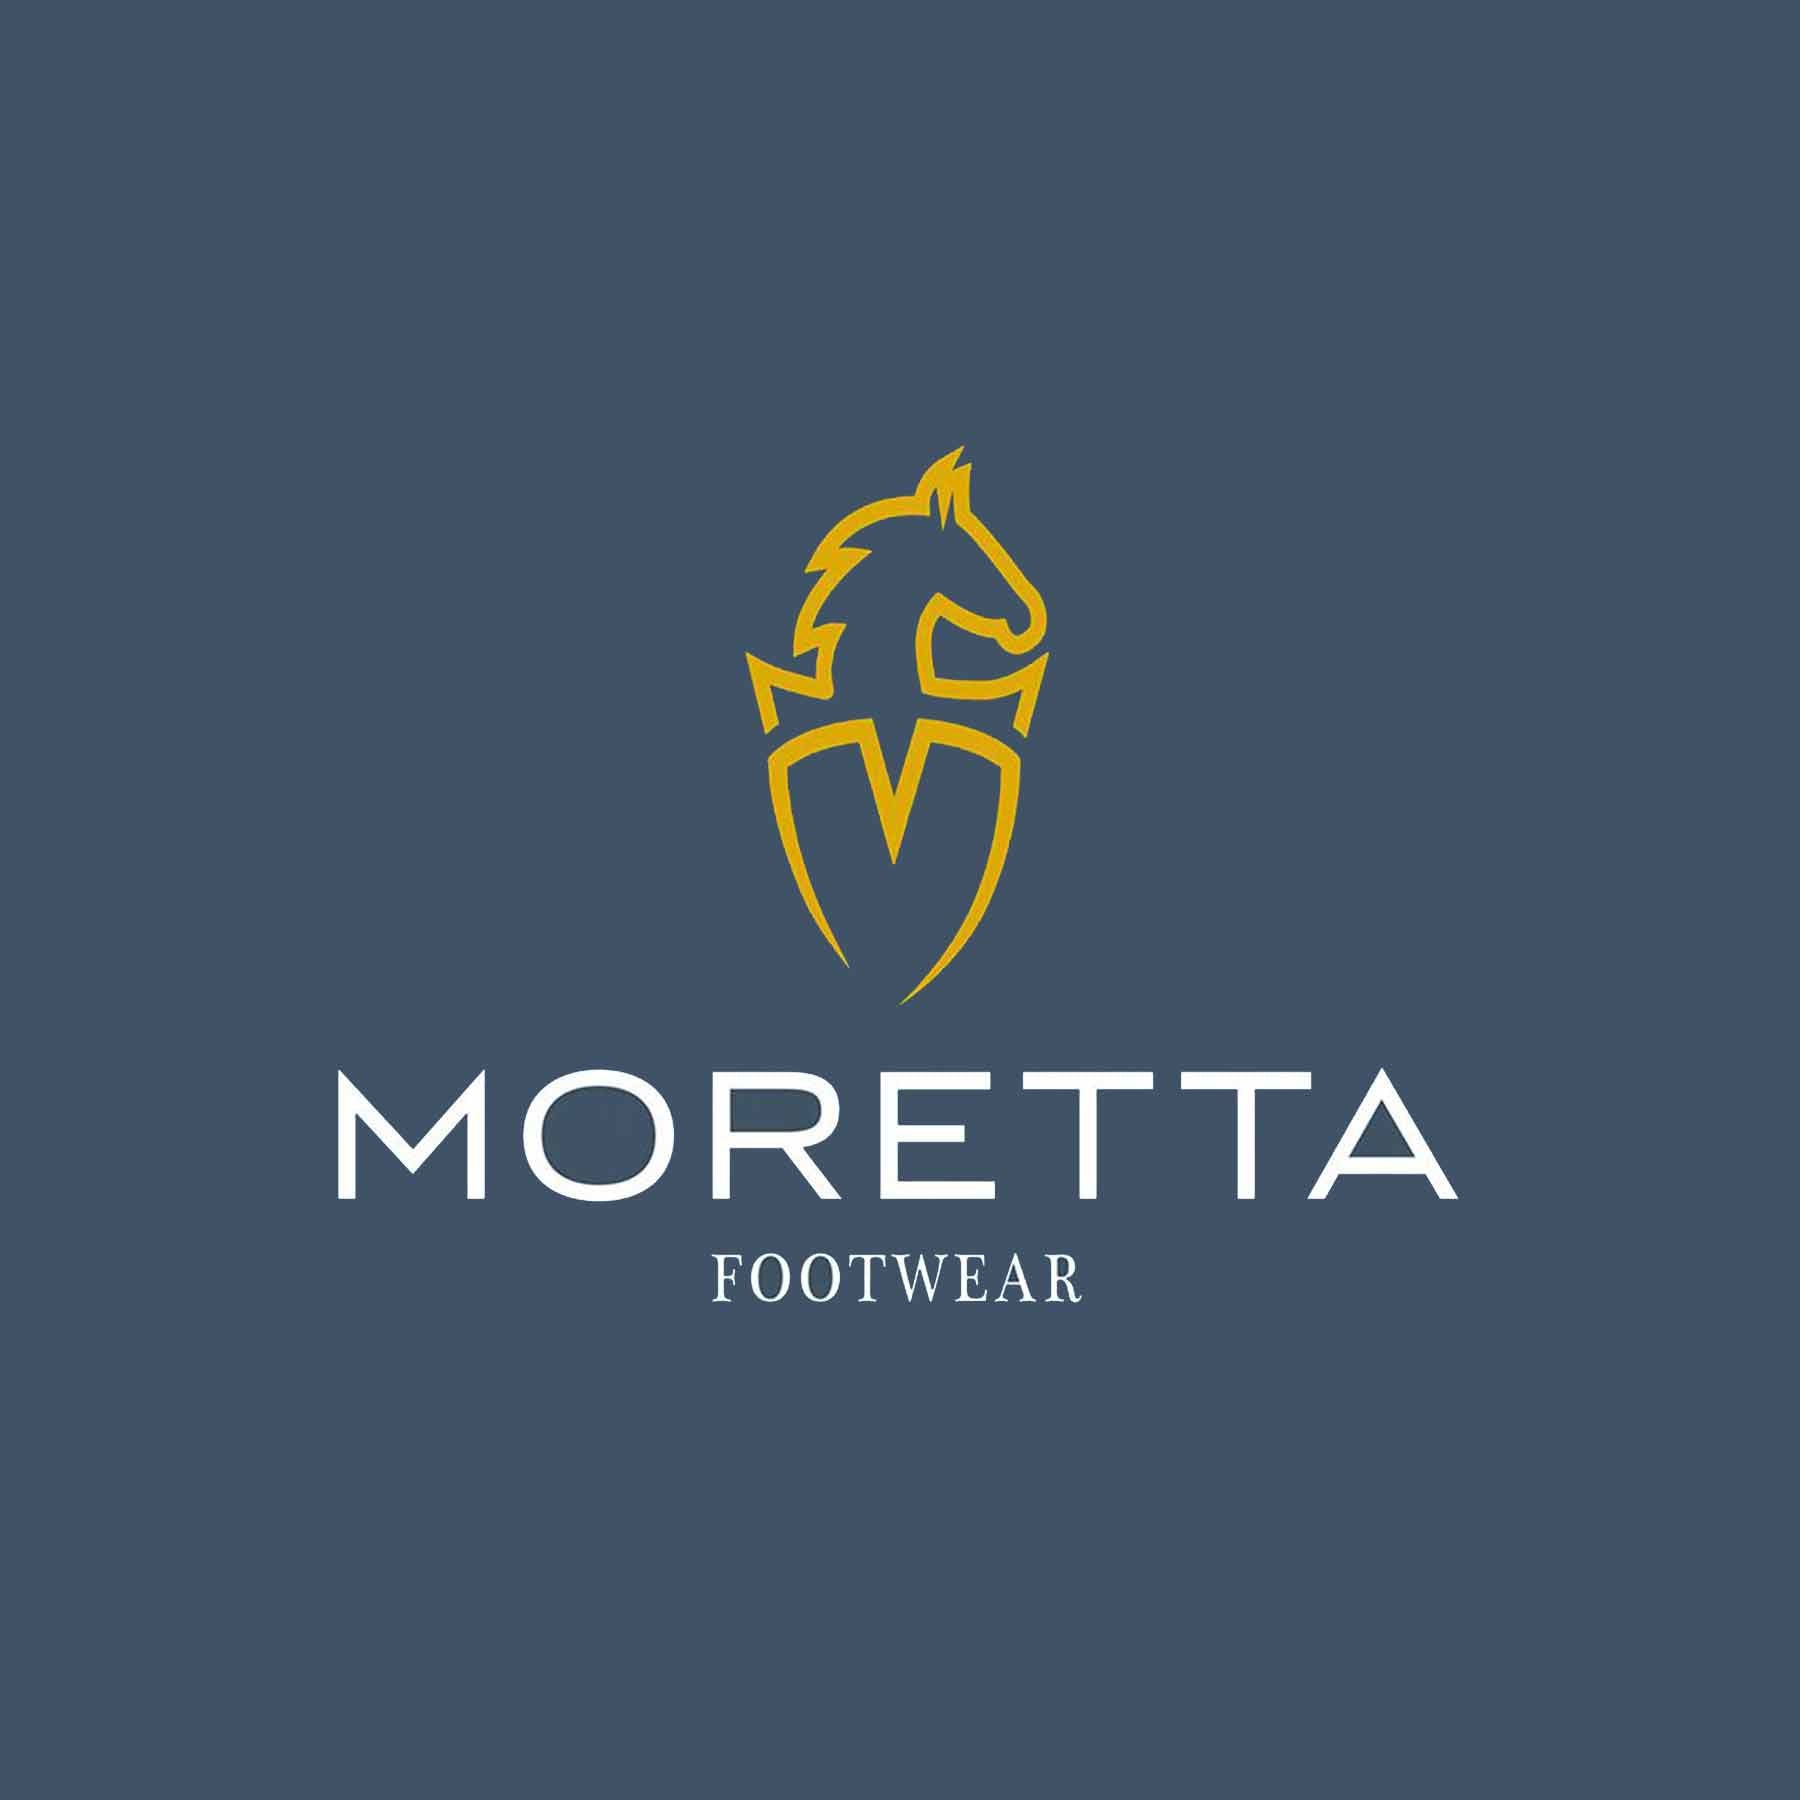 Moretta Leather Balm